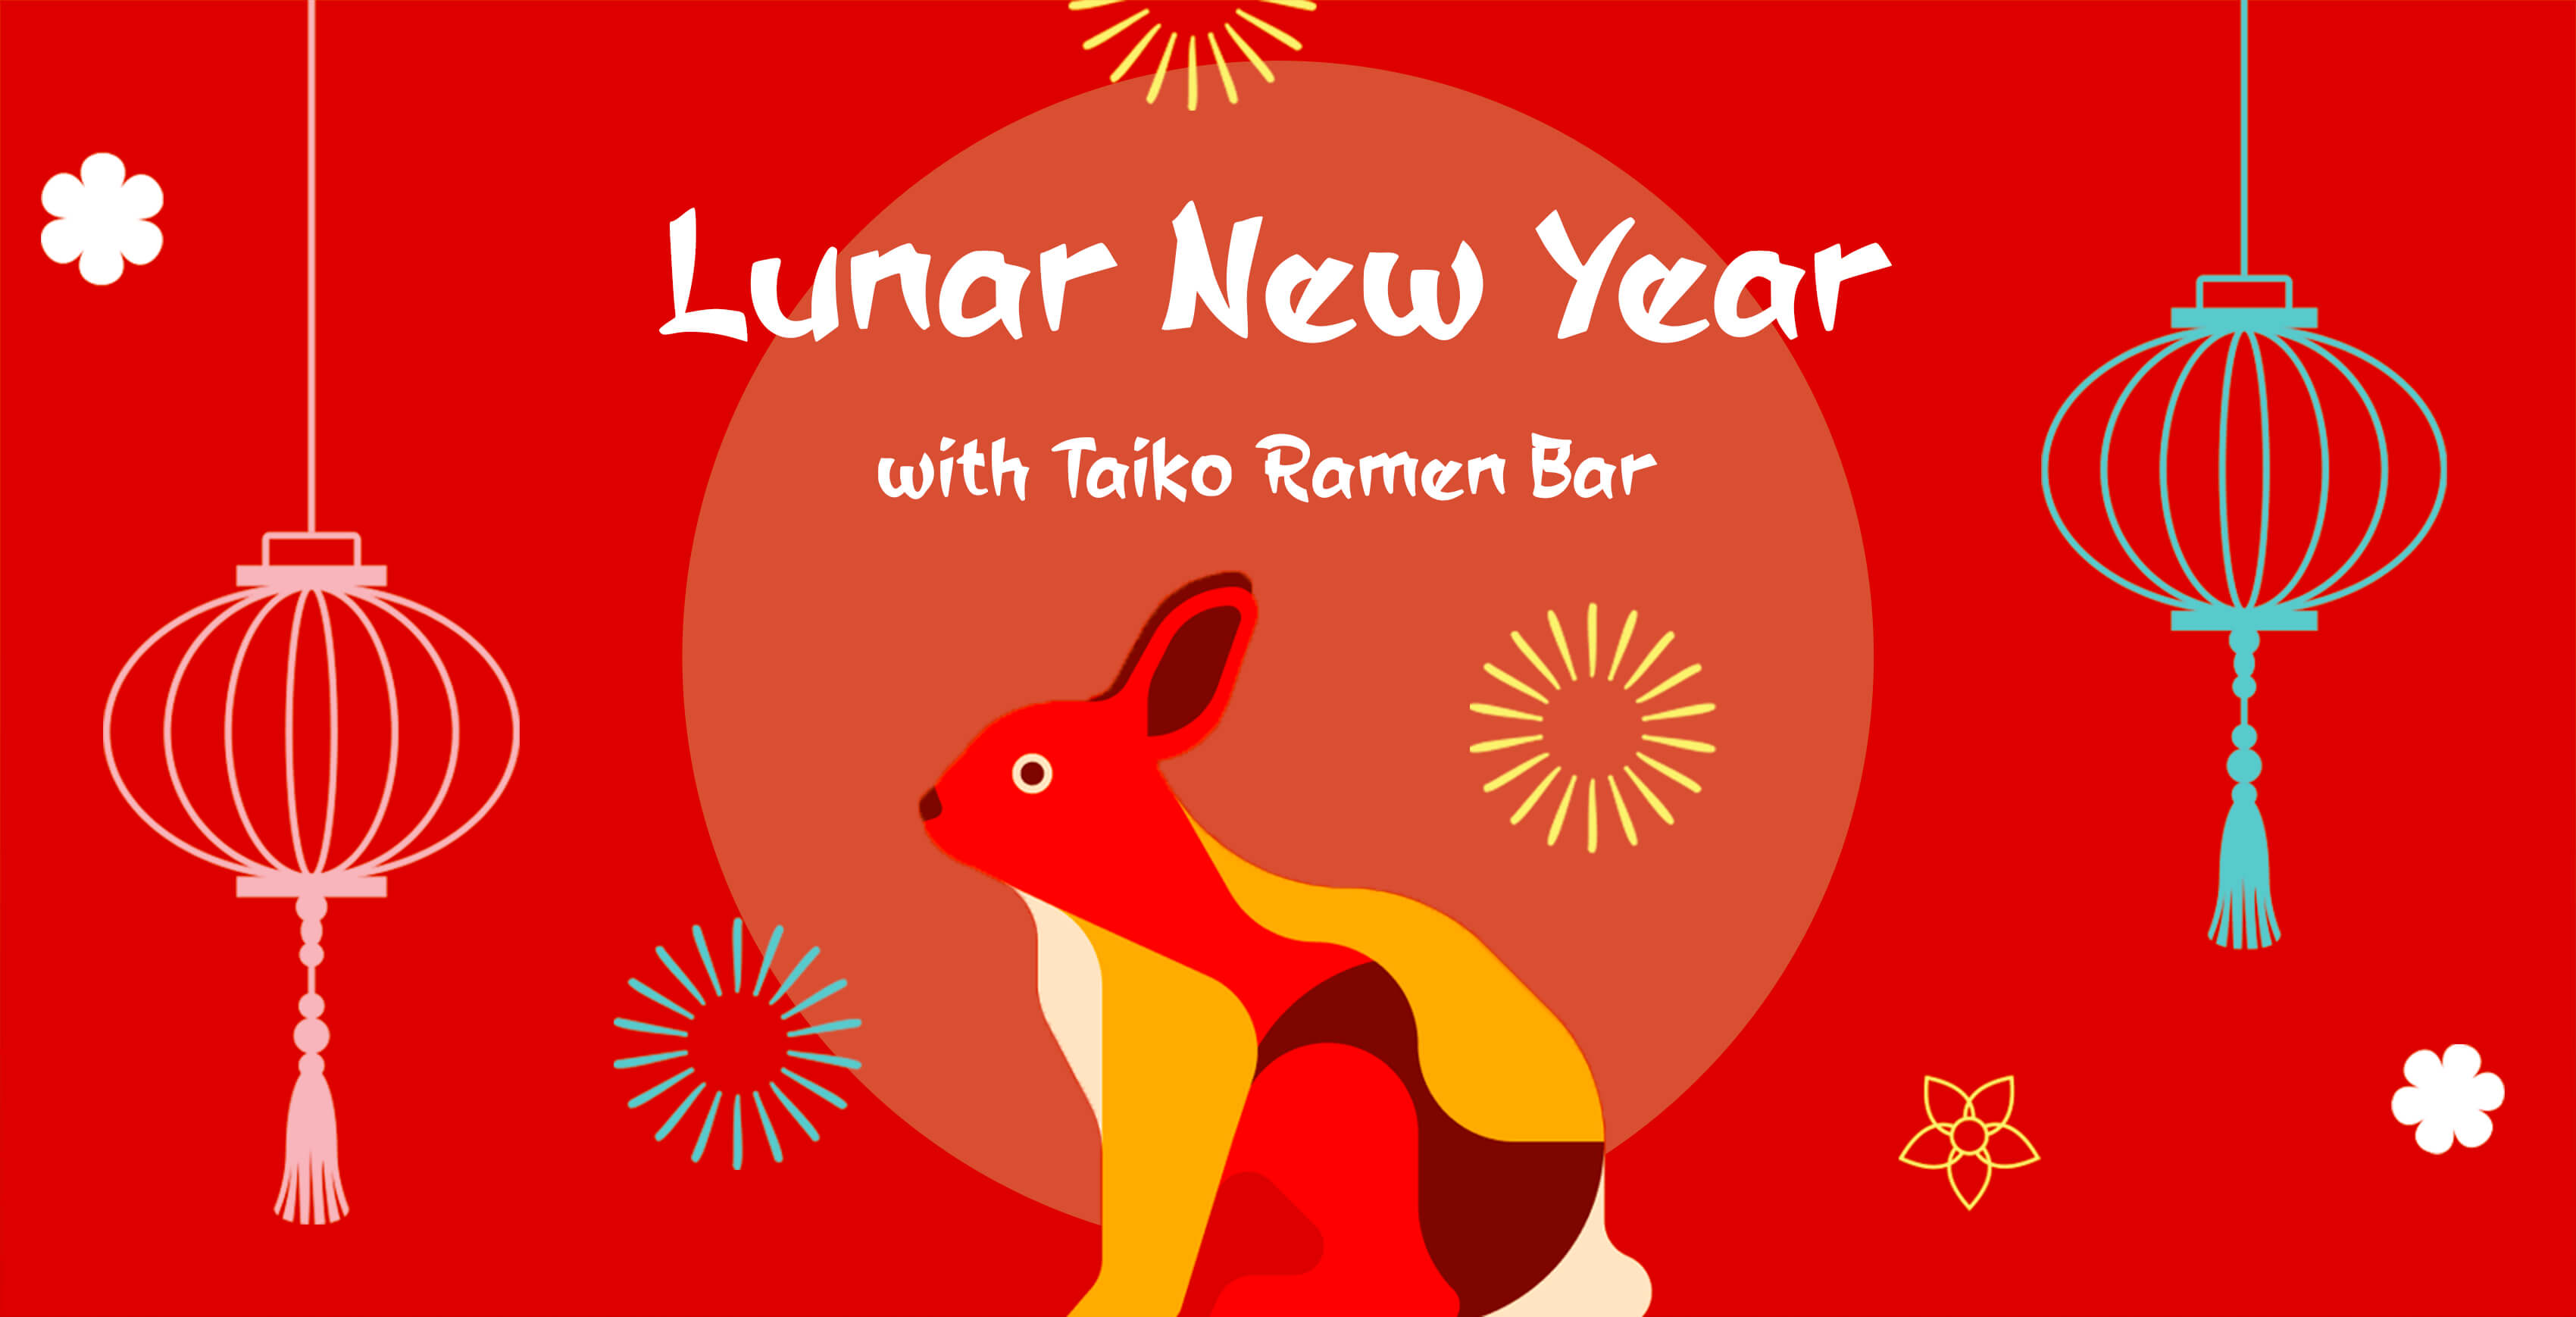 Lunar New Year with Taiko Ramen Bar